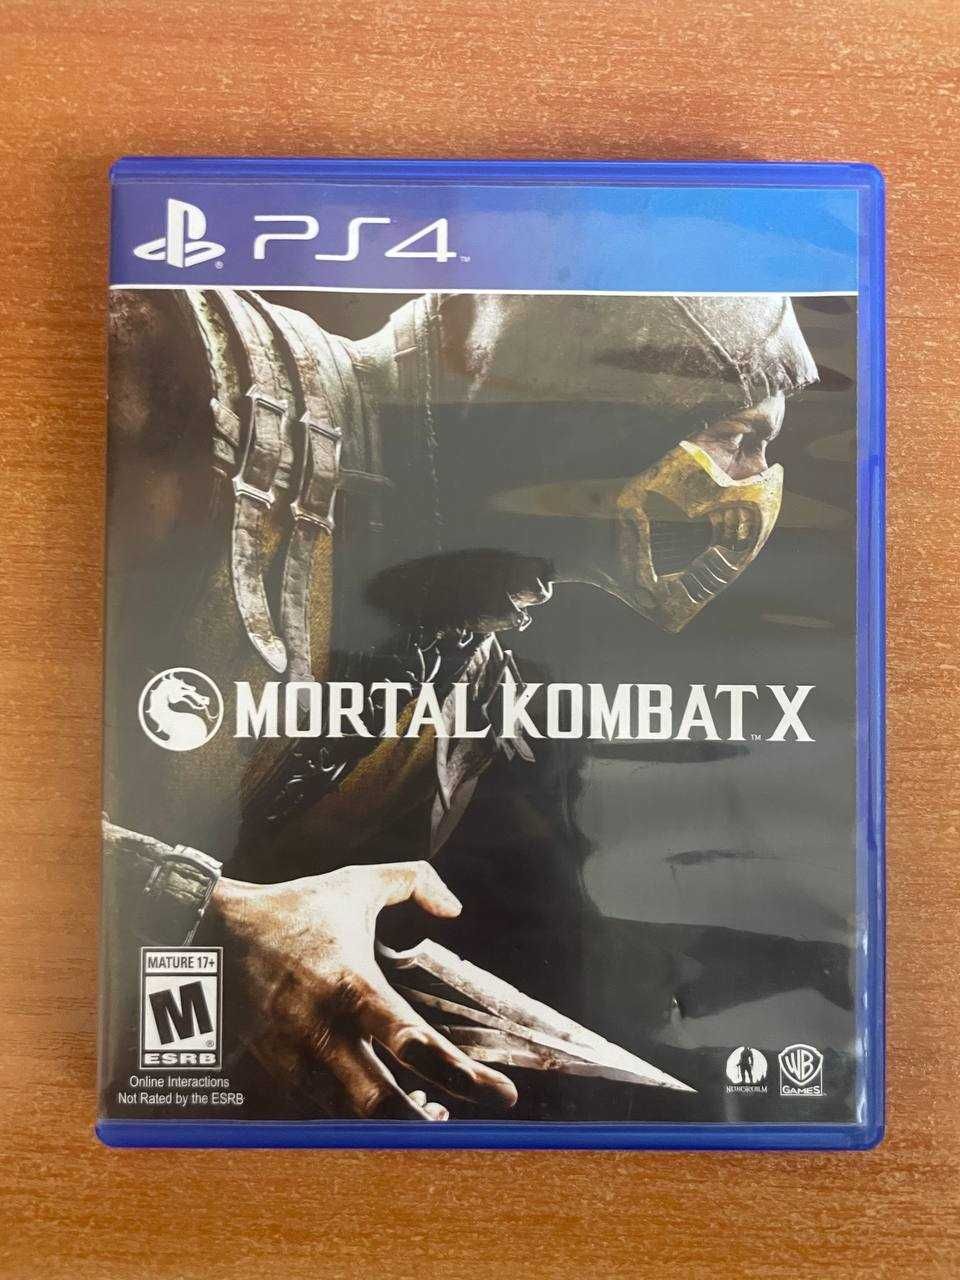 Продам Mortal Kombat X на PS4( 500 грн) срочно.  + торг